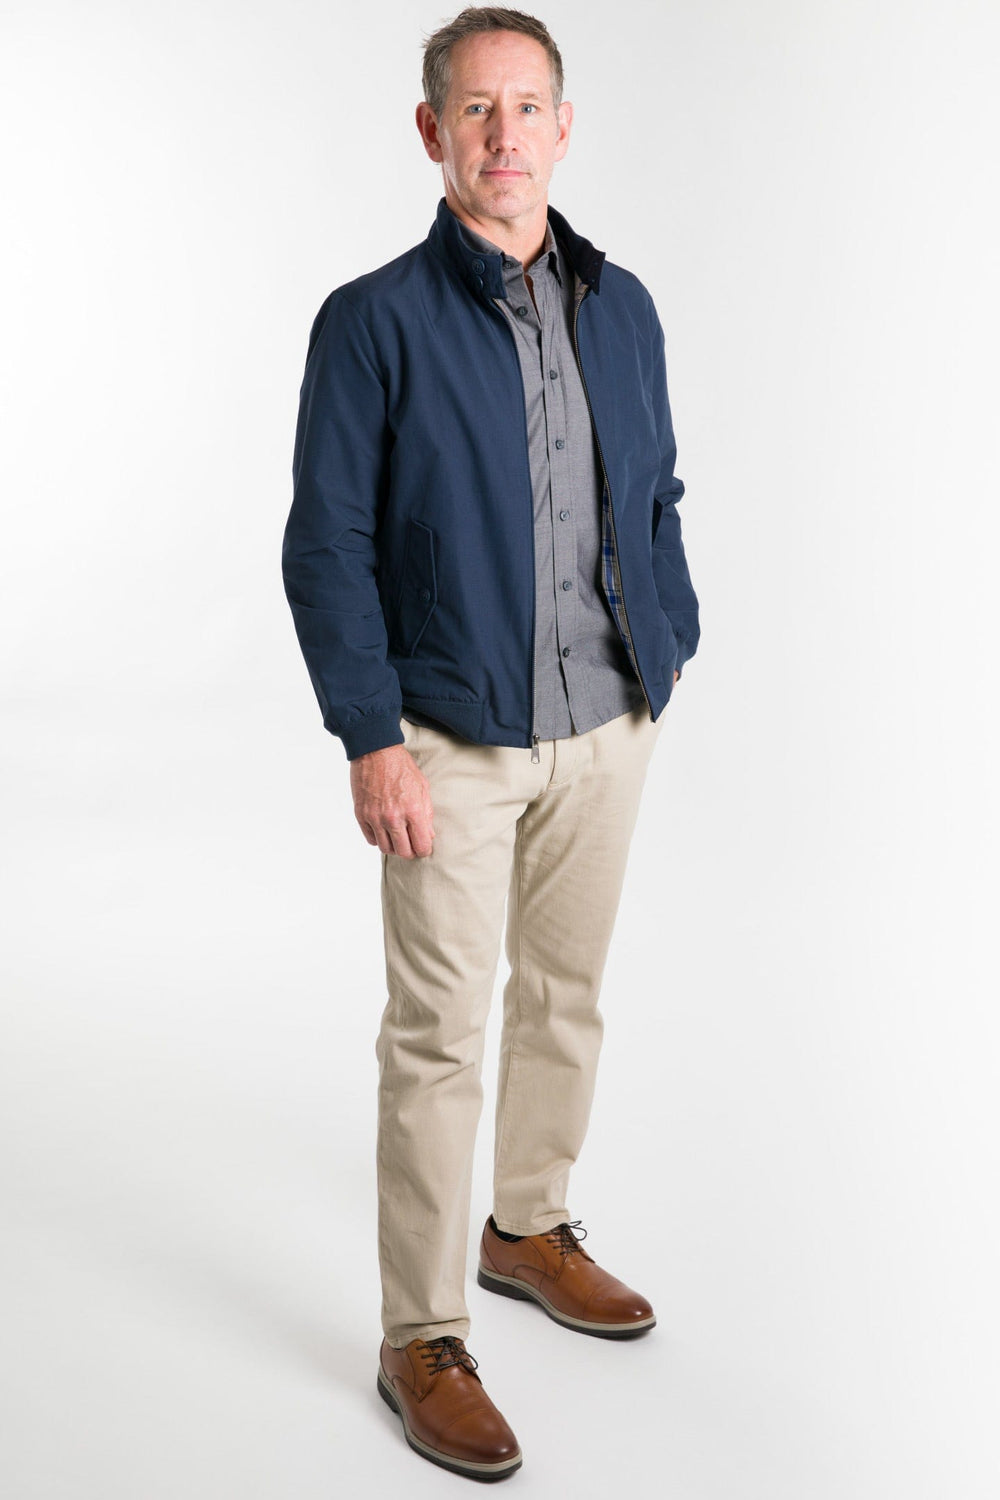 Ash & Erie Heather Grey Full-Zip Jacket Fleece for Short Men